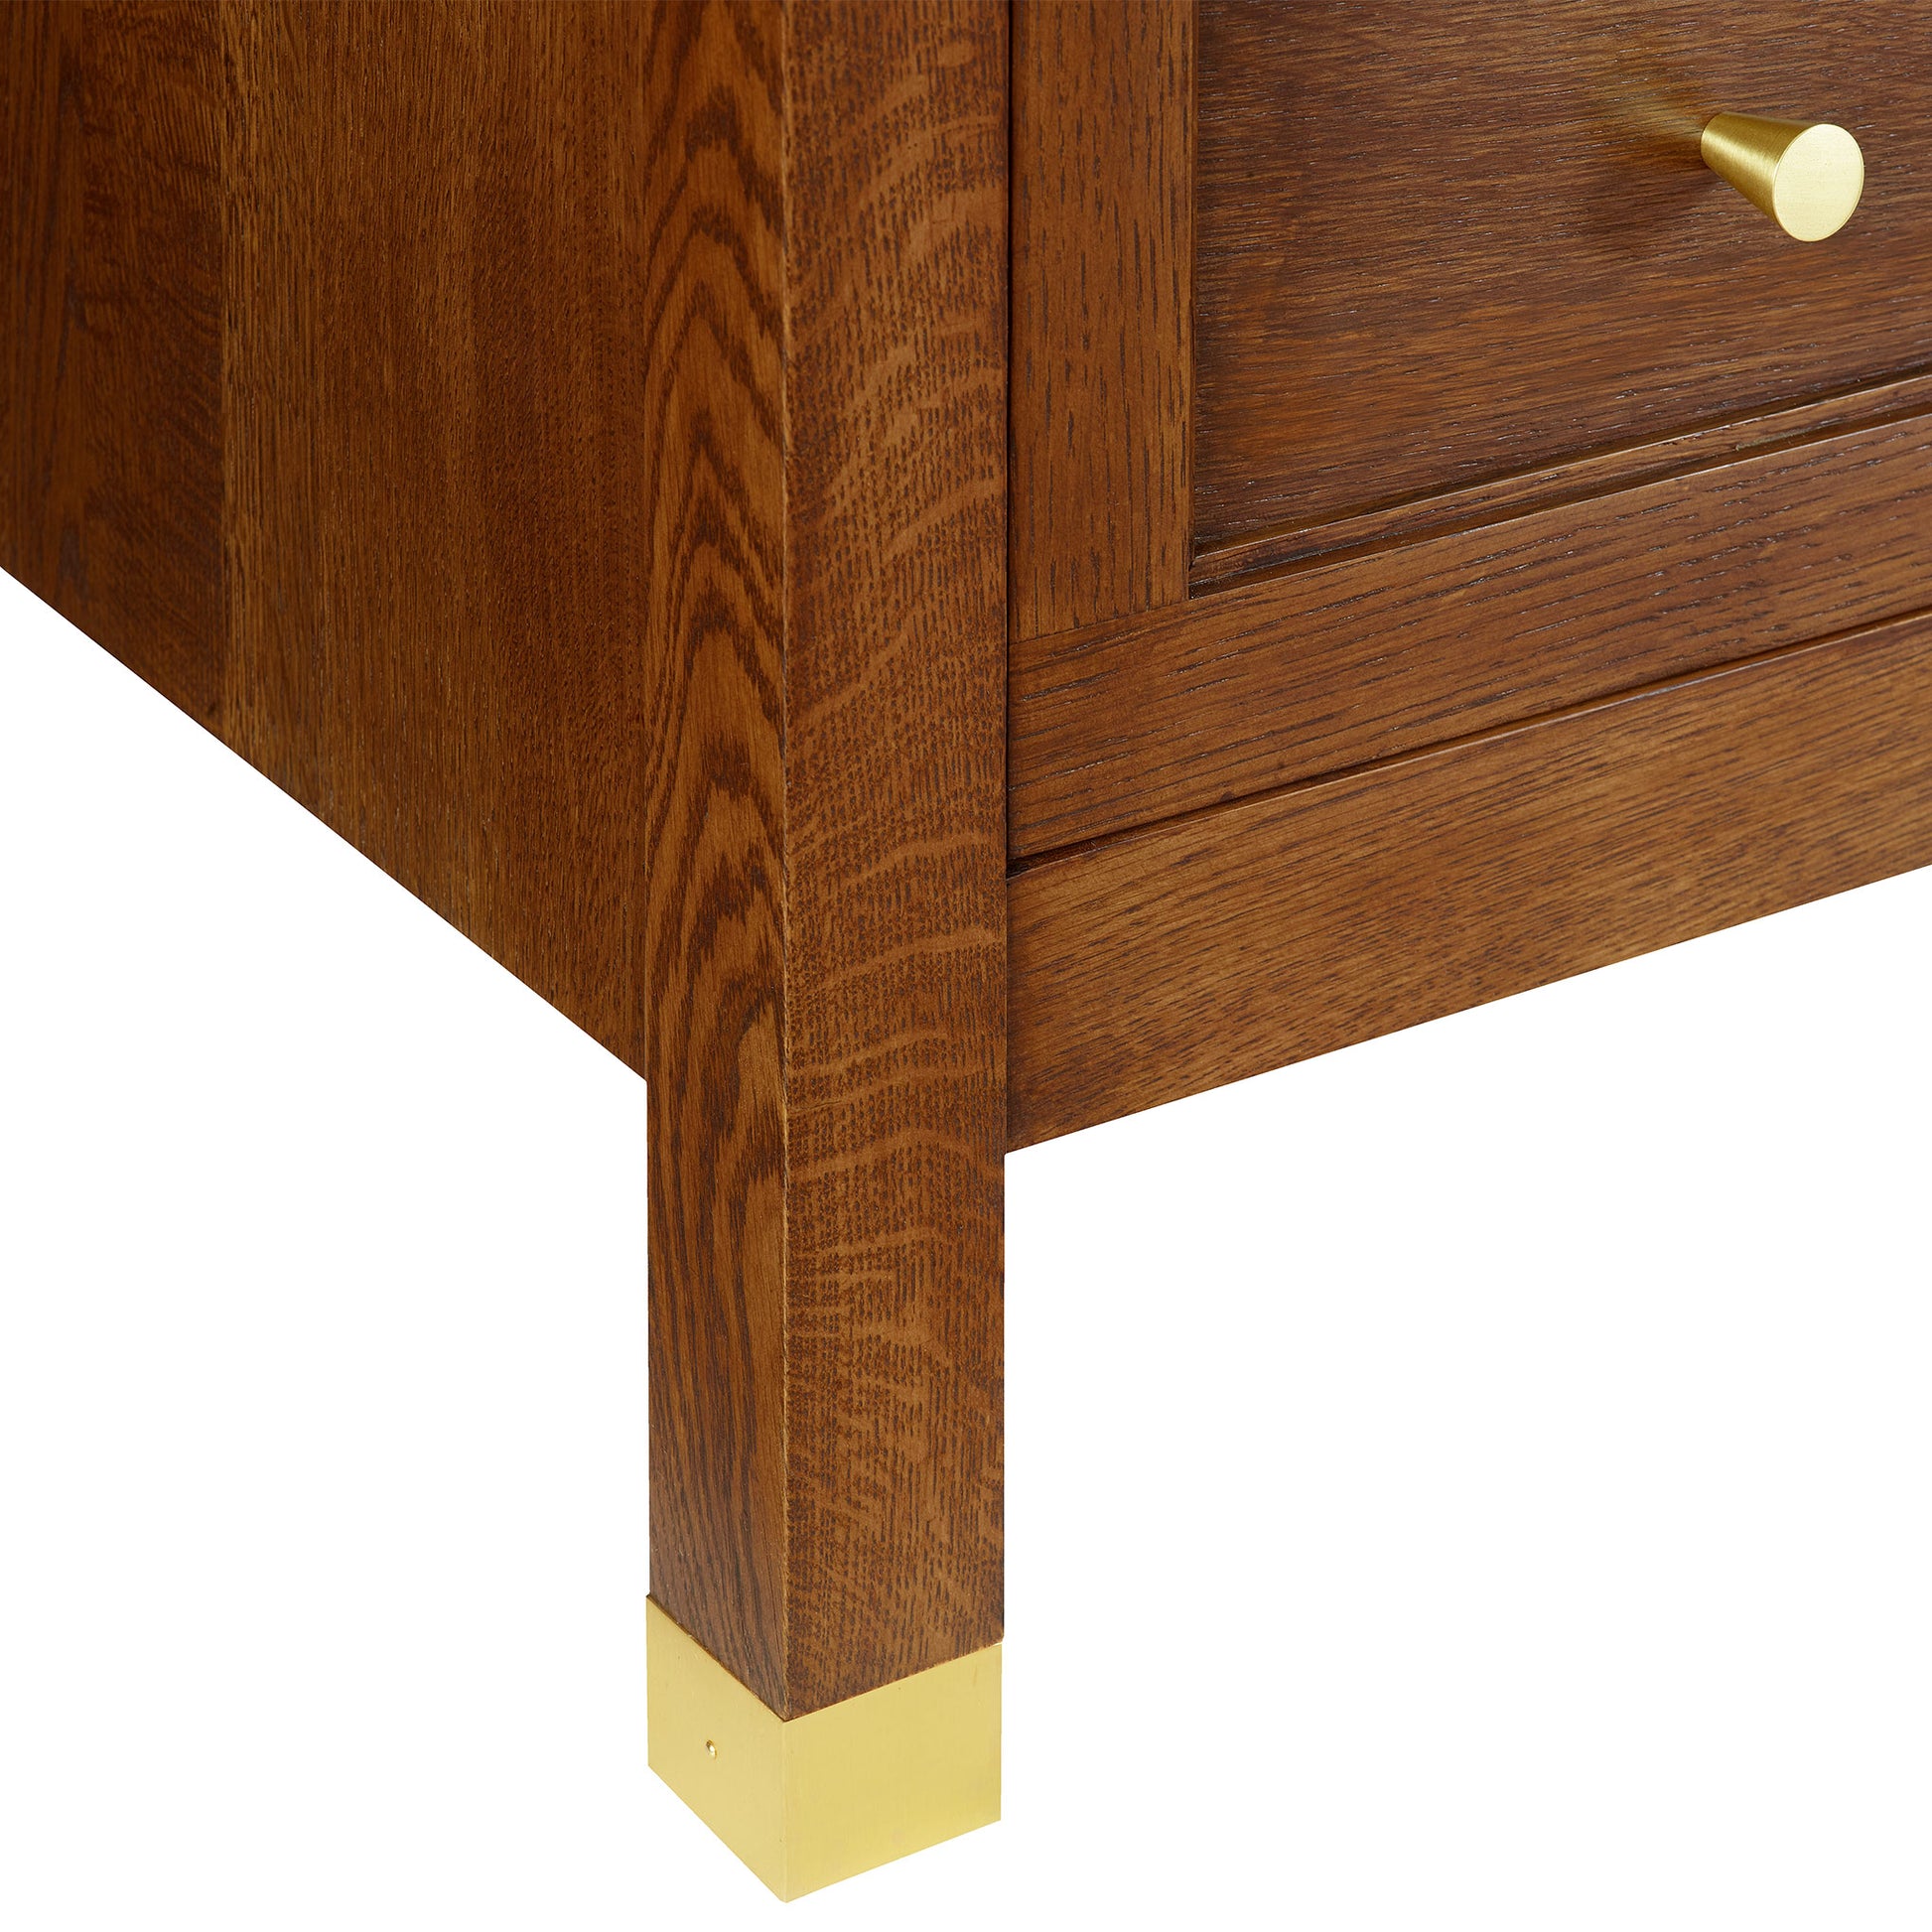 Surrey Hills Six-Drawer Dresser - Stickley Furniture | Mattress